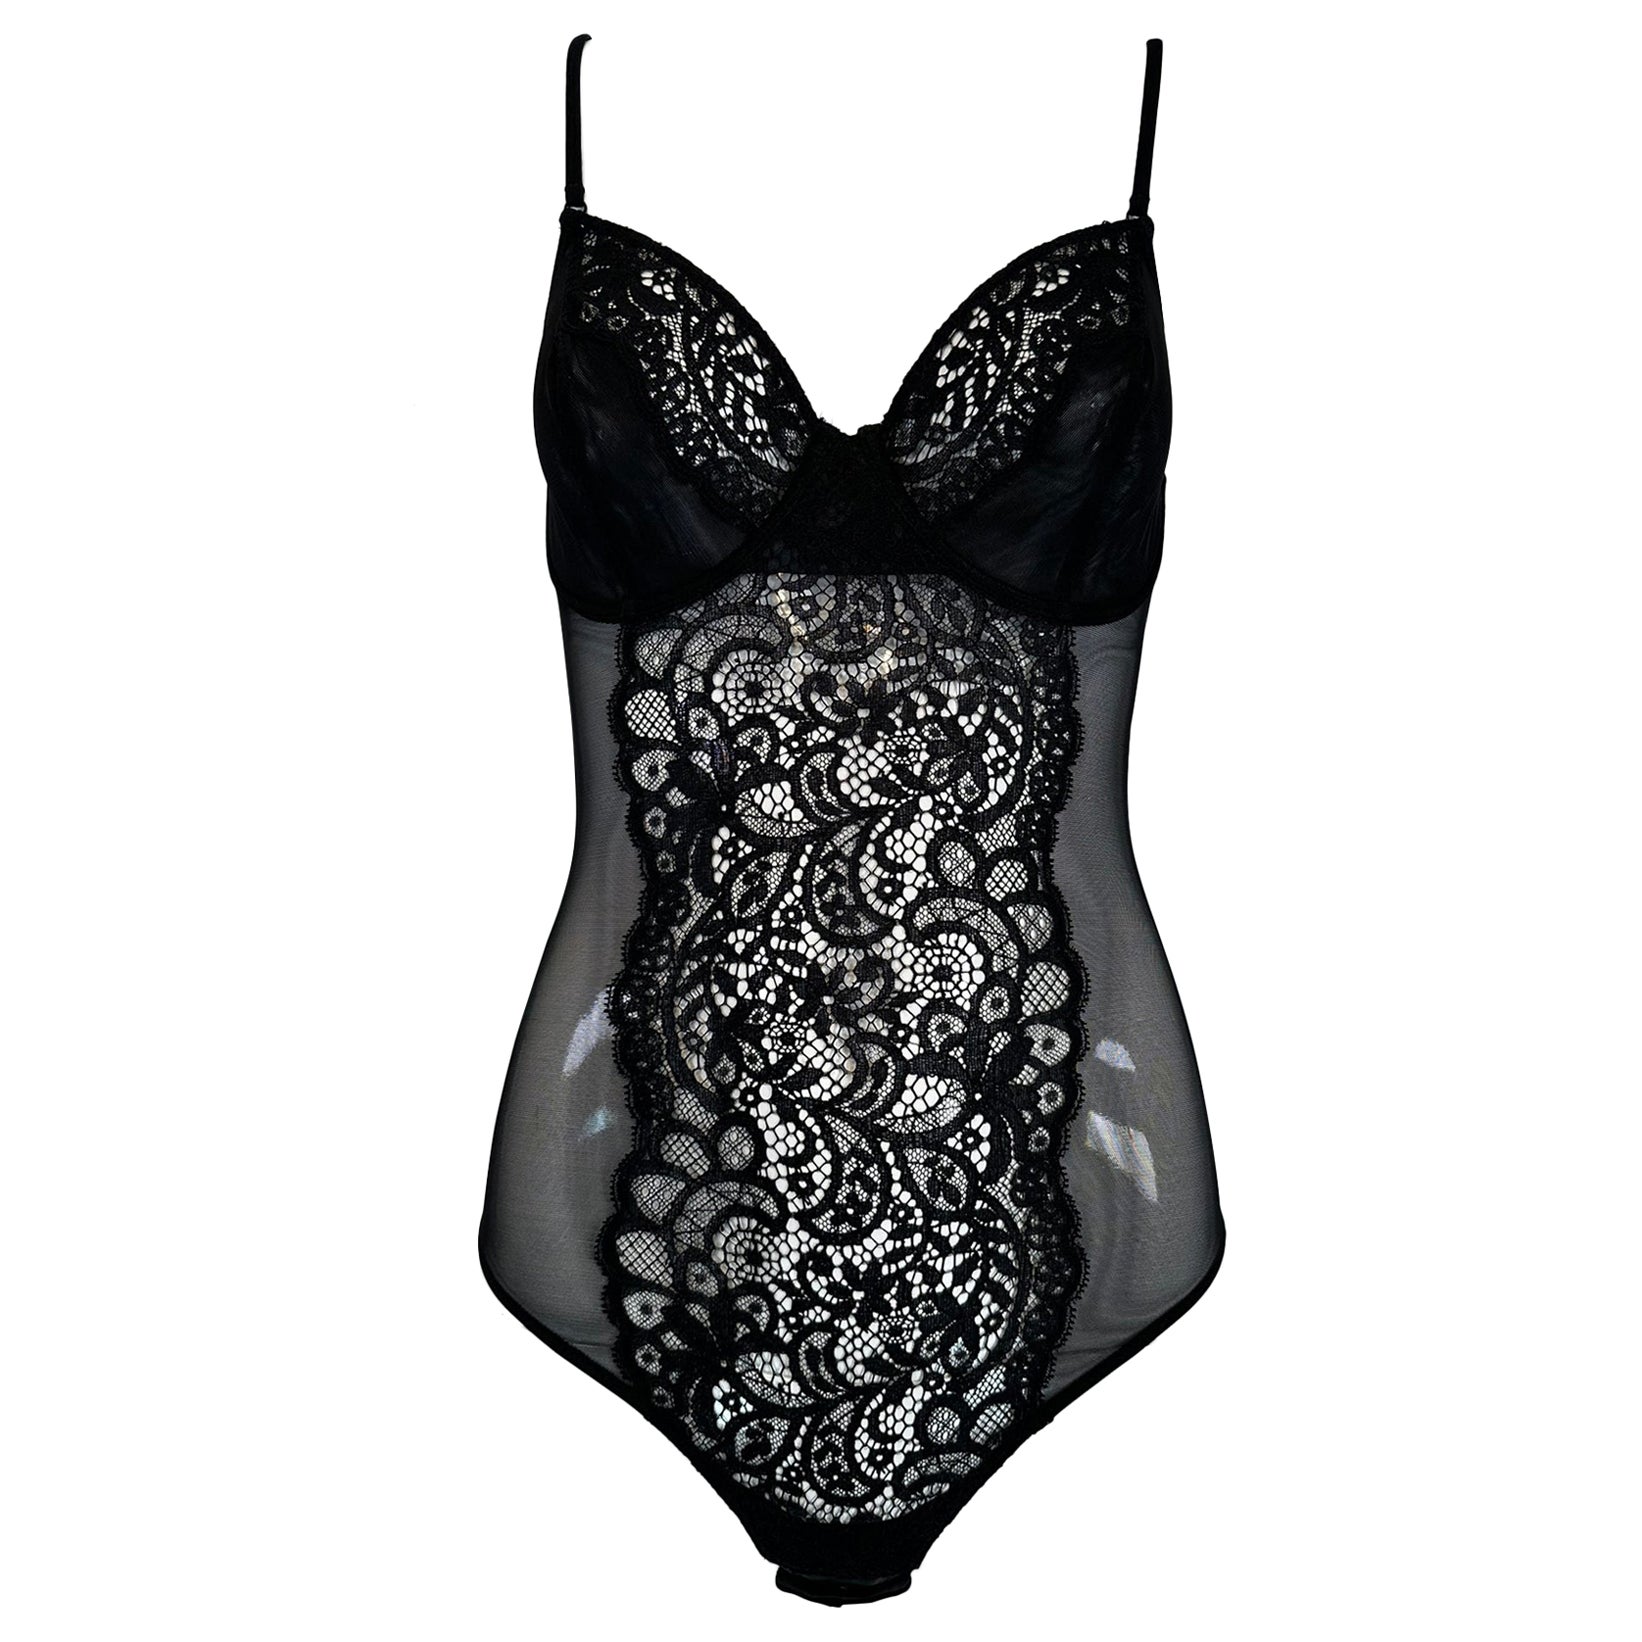 La Perla Studio Black Underwire Lace front Body Suit unworn For Sale